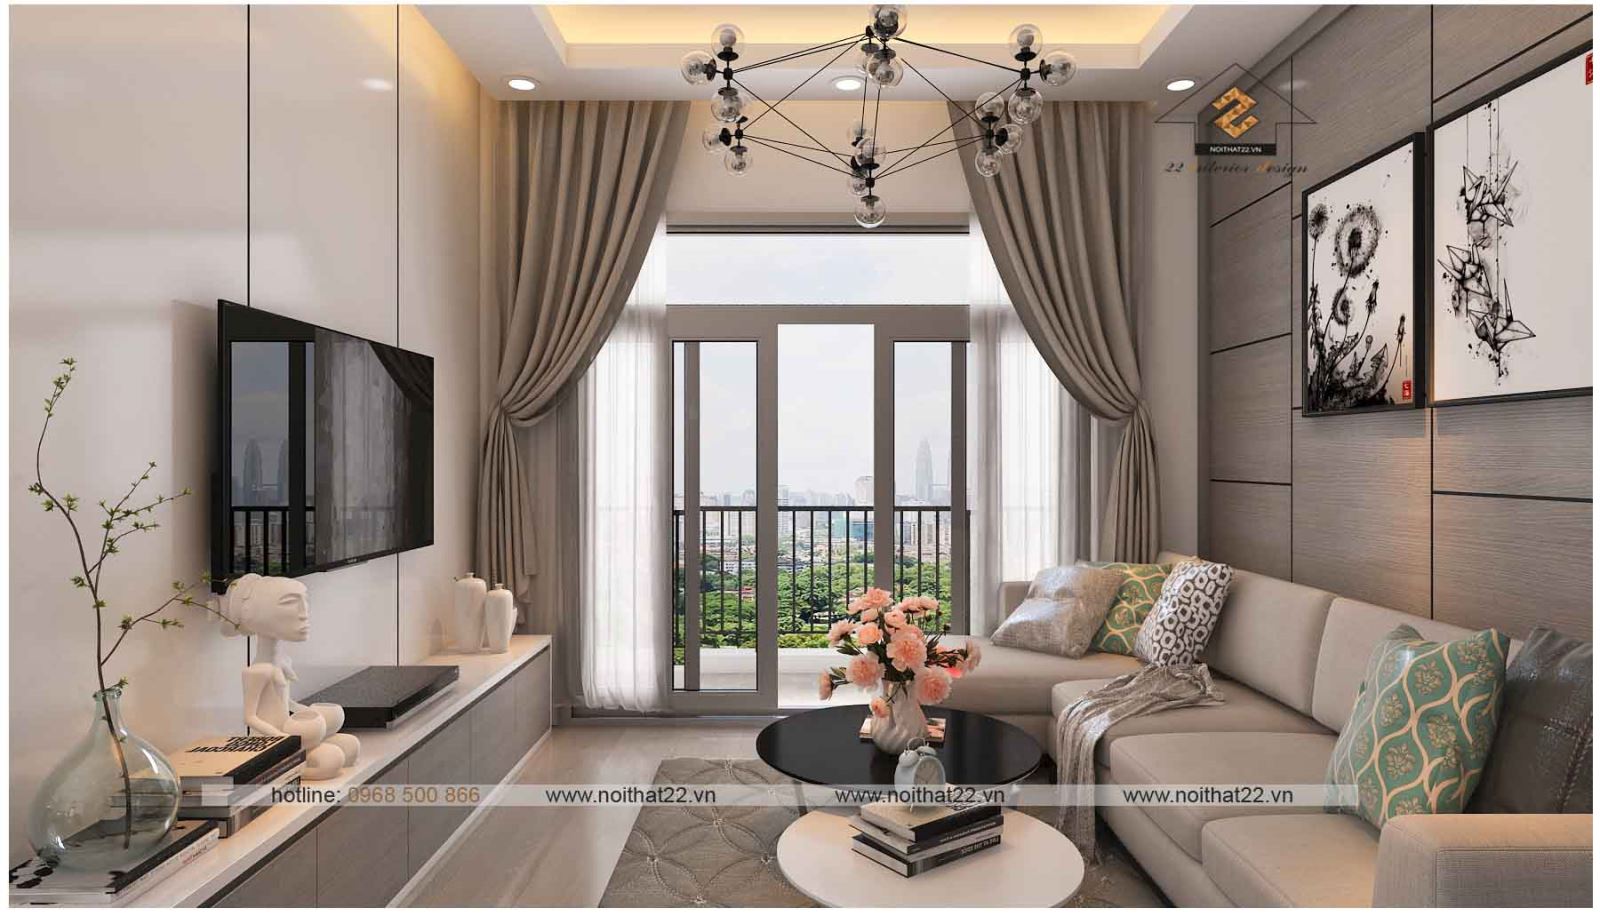 Mách bạn hơn 98 những mẫu căn hộ chung cư đẹp tuyệt vời nhất  thdonghoadian